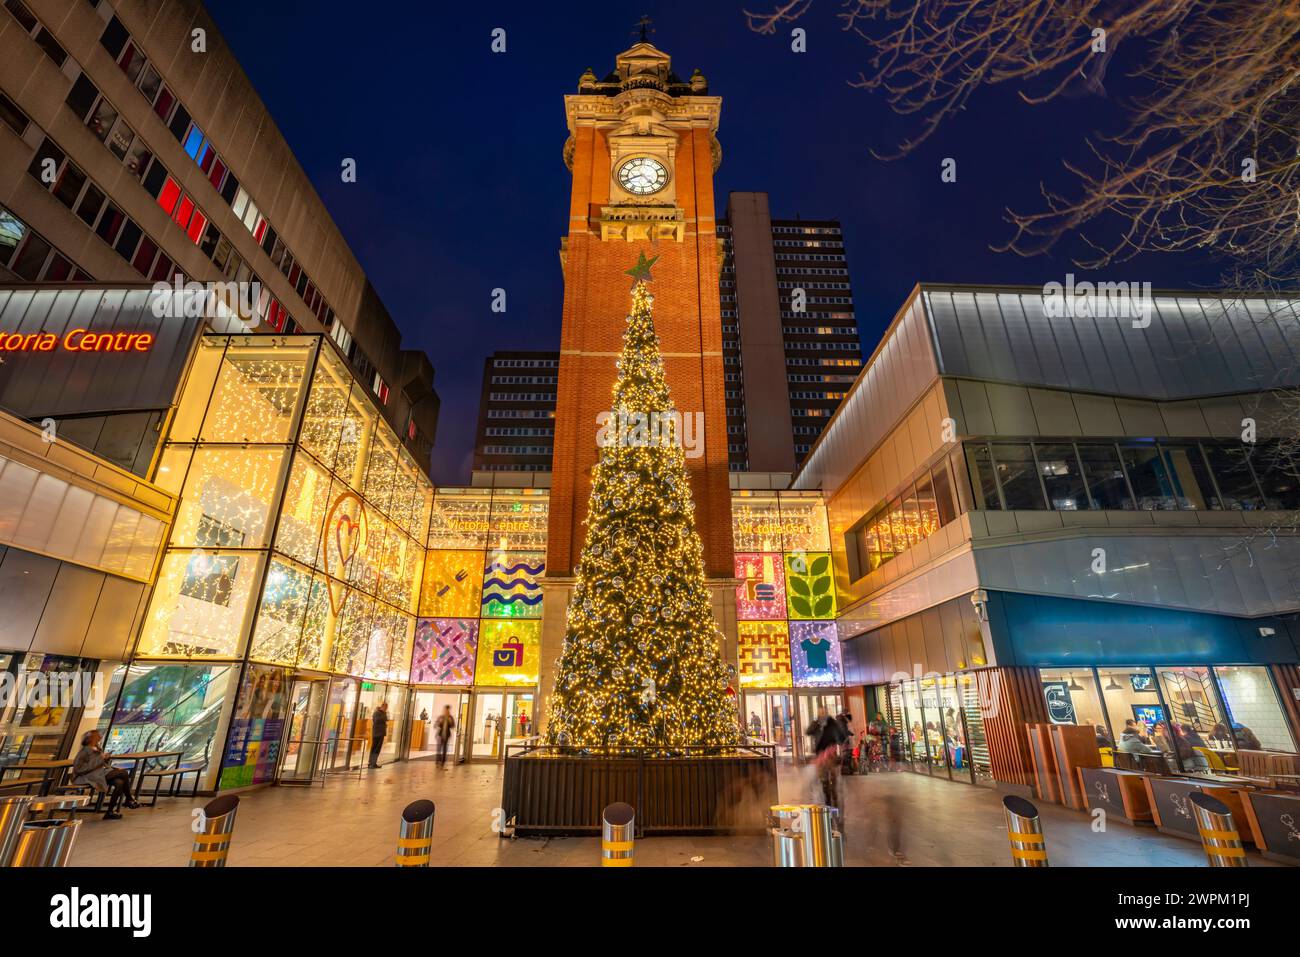 Vue de Victoria Station Clock Tower et arbre de Noël au crépuscule, Nottingham, Nottinghamshire, Angleterre, Royaume-Uni, Europe Banque D'Images